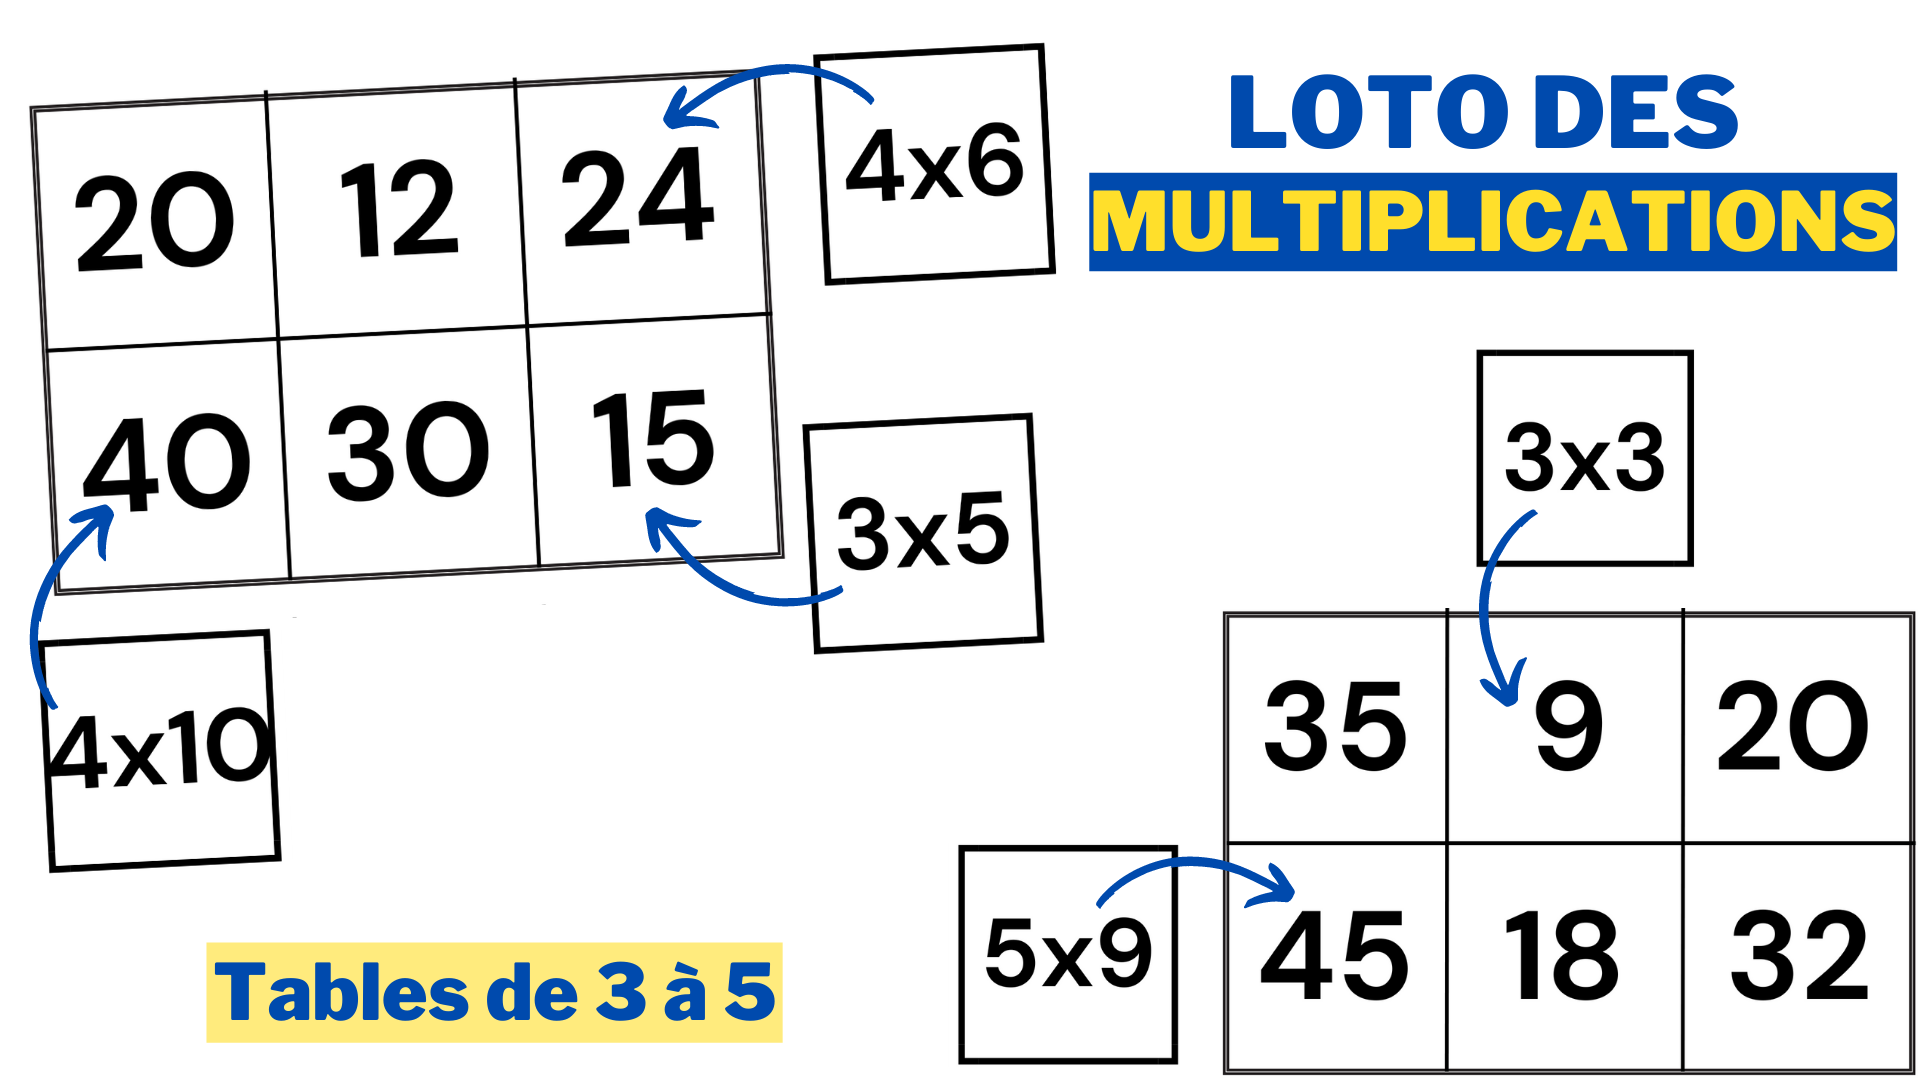 Loto des multiplications (tables de 3 à 5) - Apprendre, réviser, mémoriser